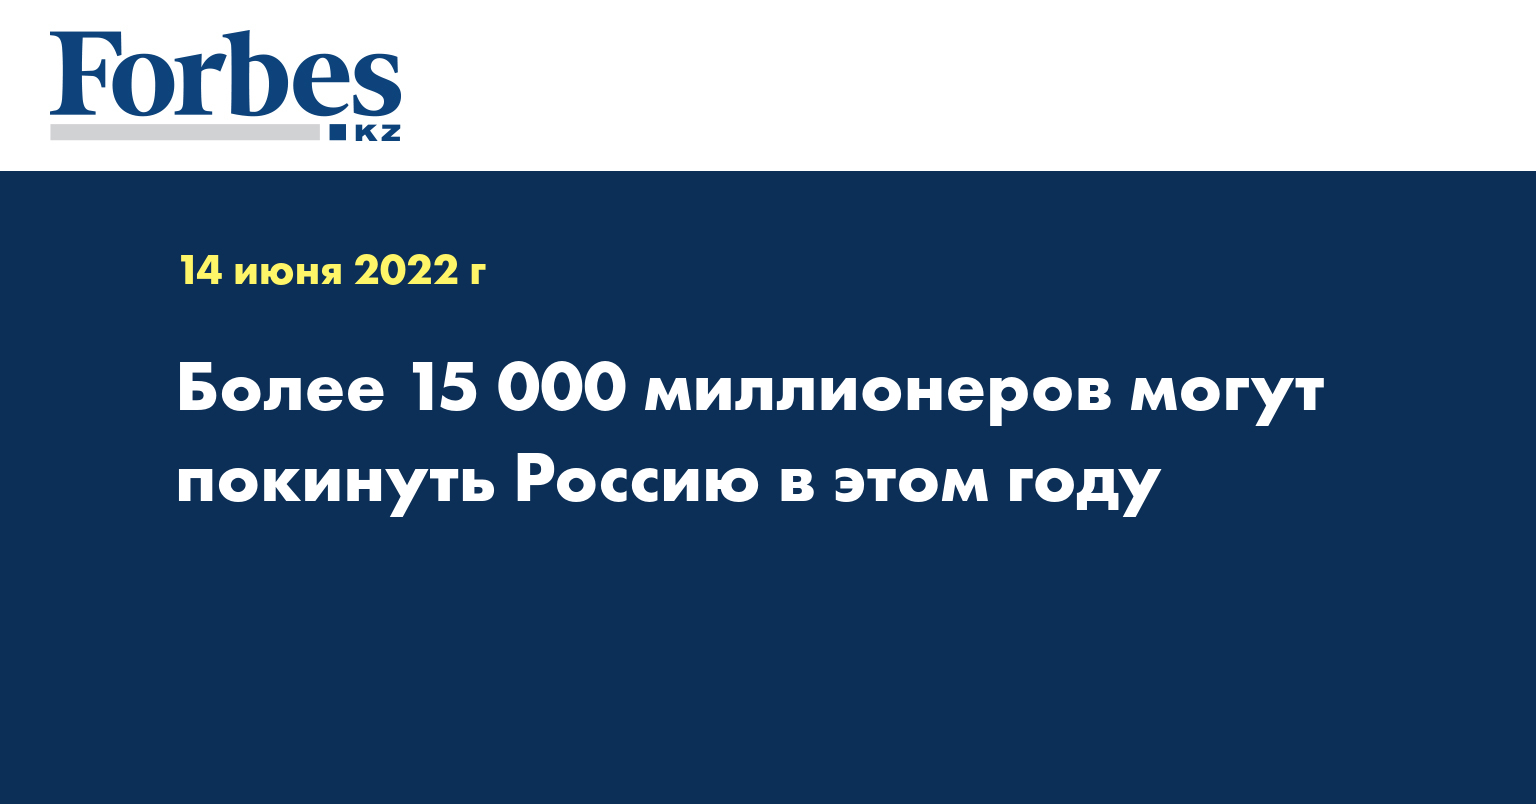 Более 15 000 миллионеров могут покинуть Россию в этом году